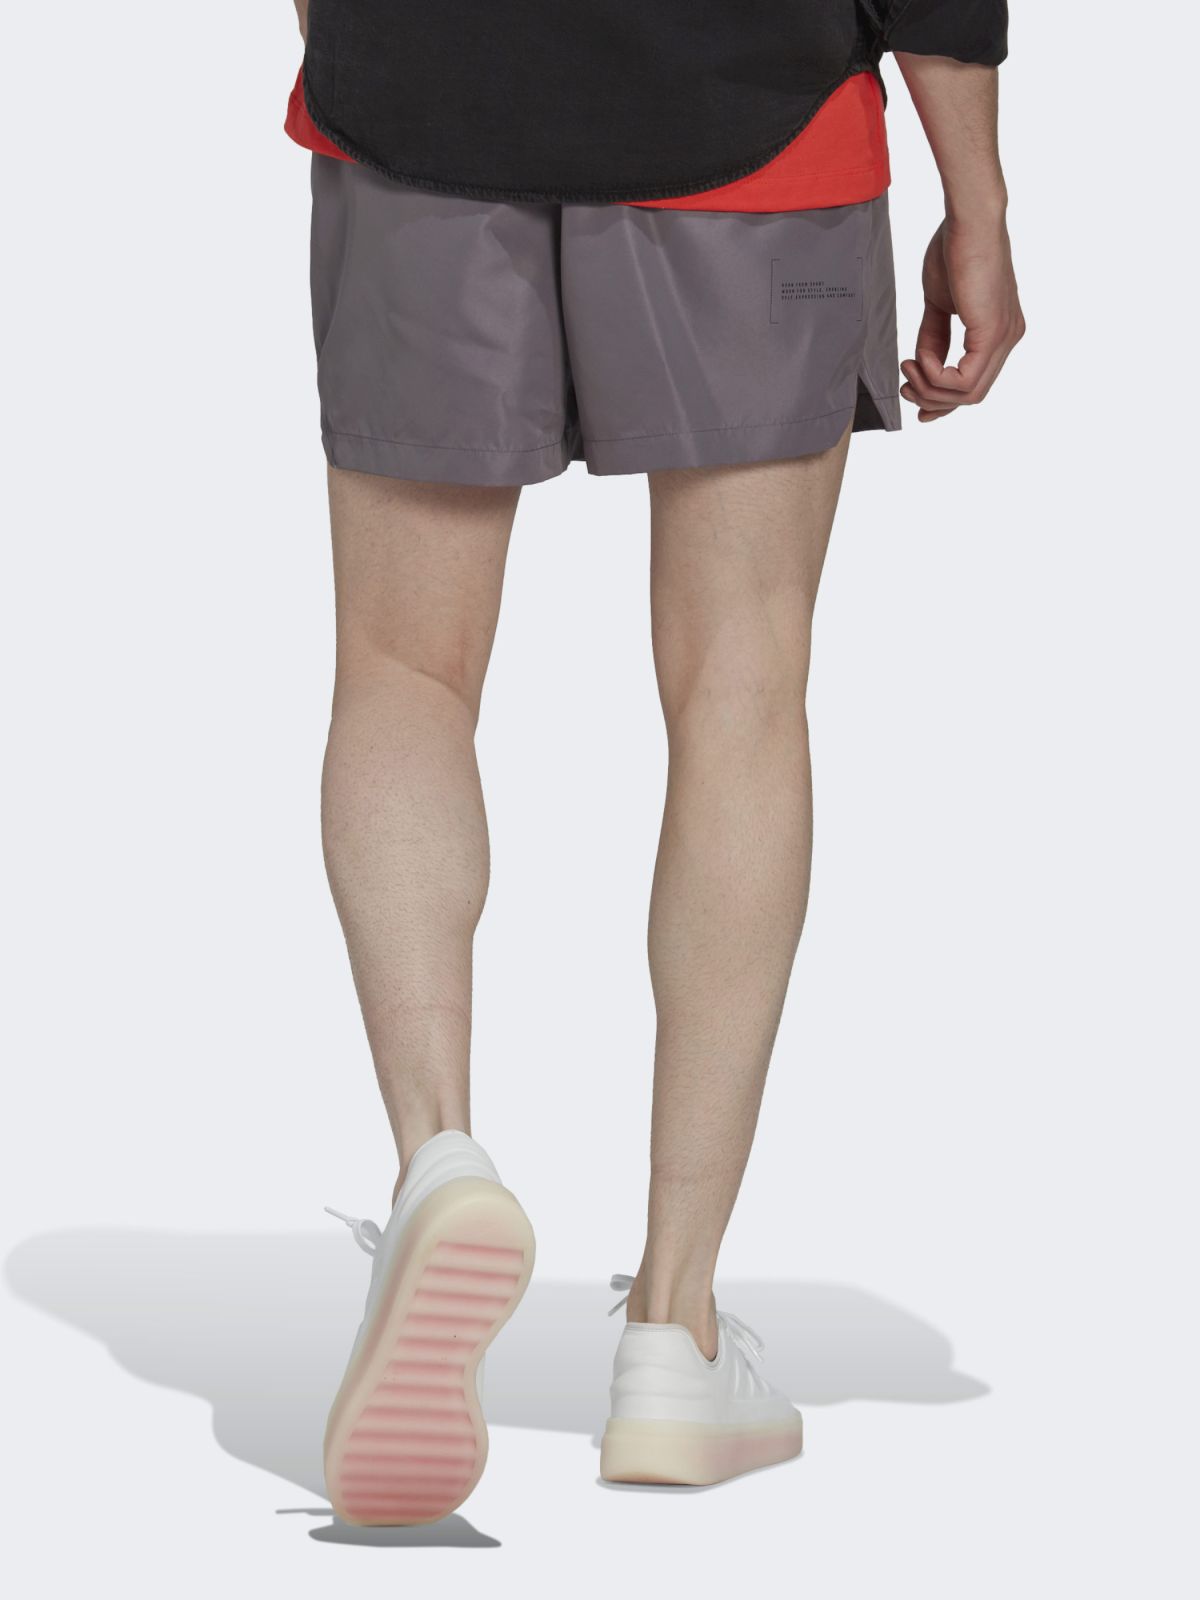  מכנסי אימון עם הדפס לוגו של ADIDAS Performance